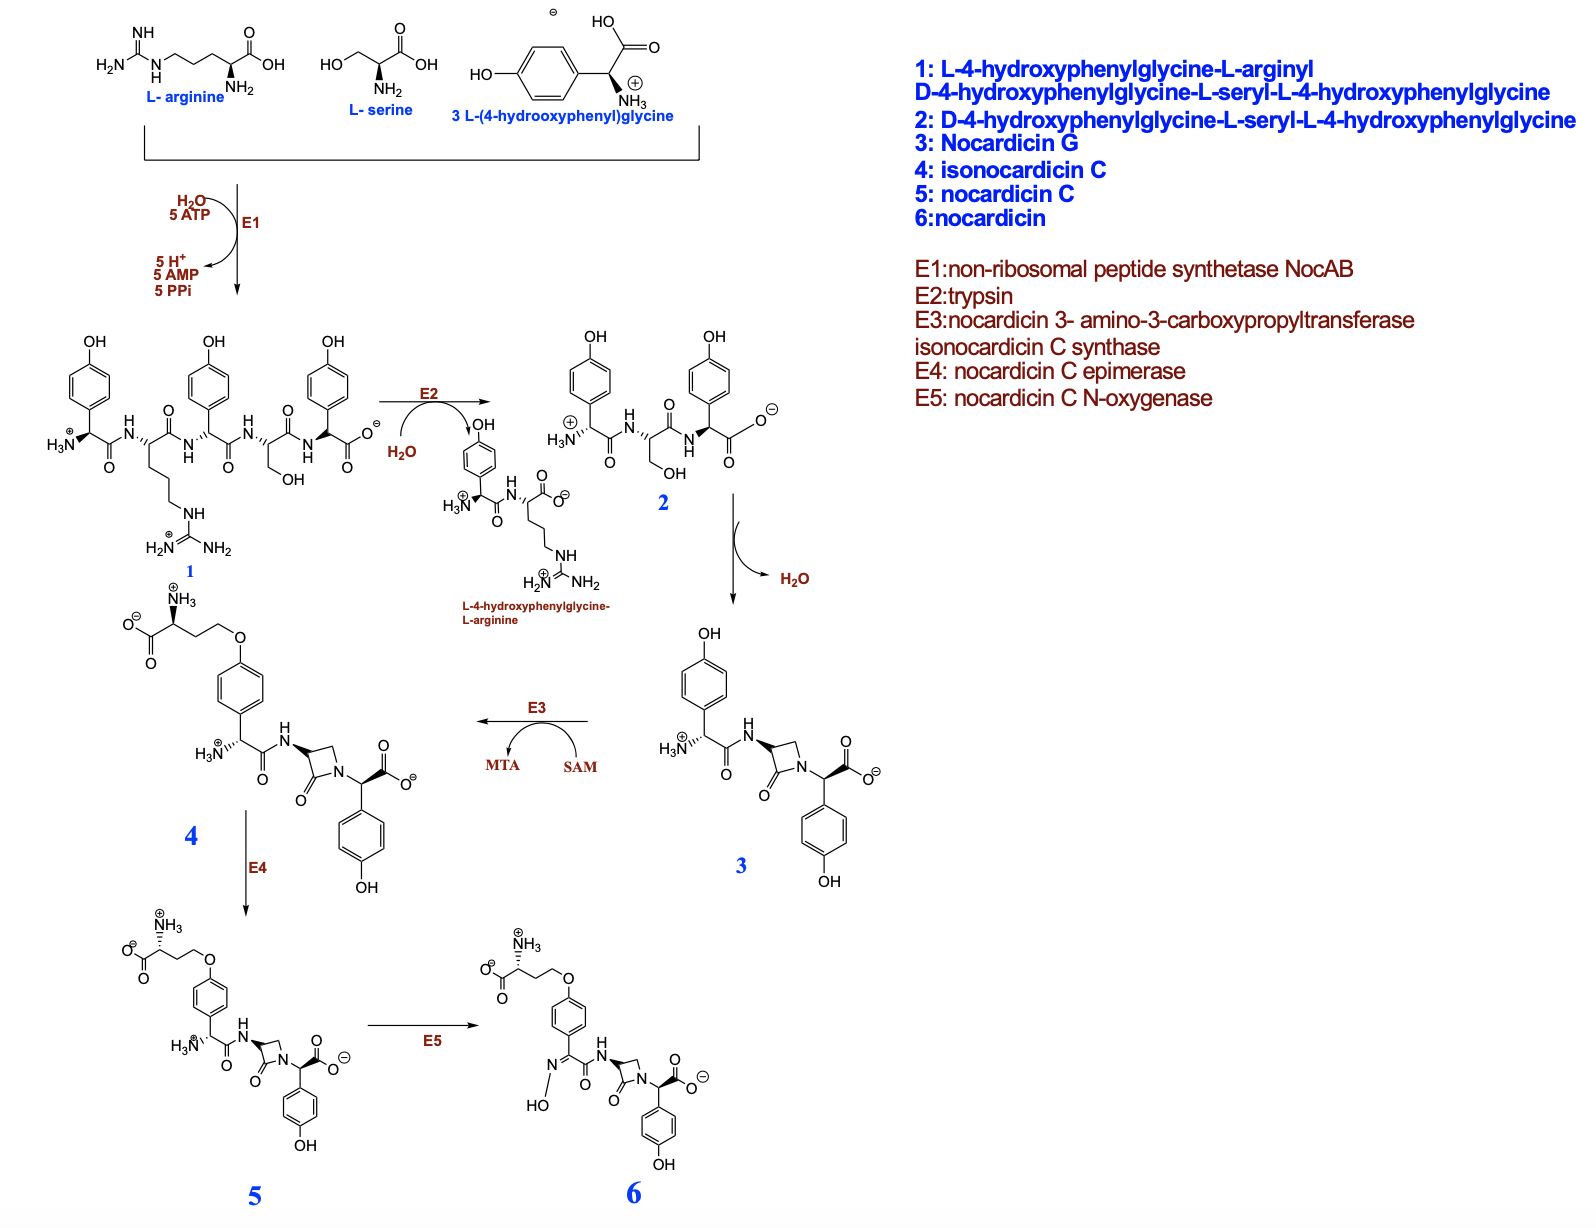 Biosynthesis of Nocardicin A